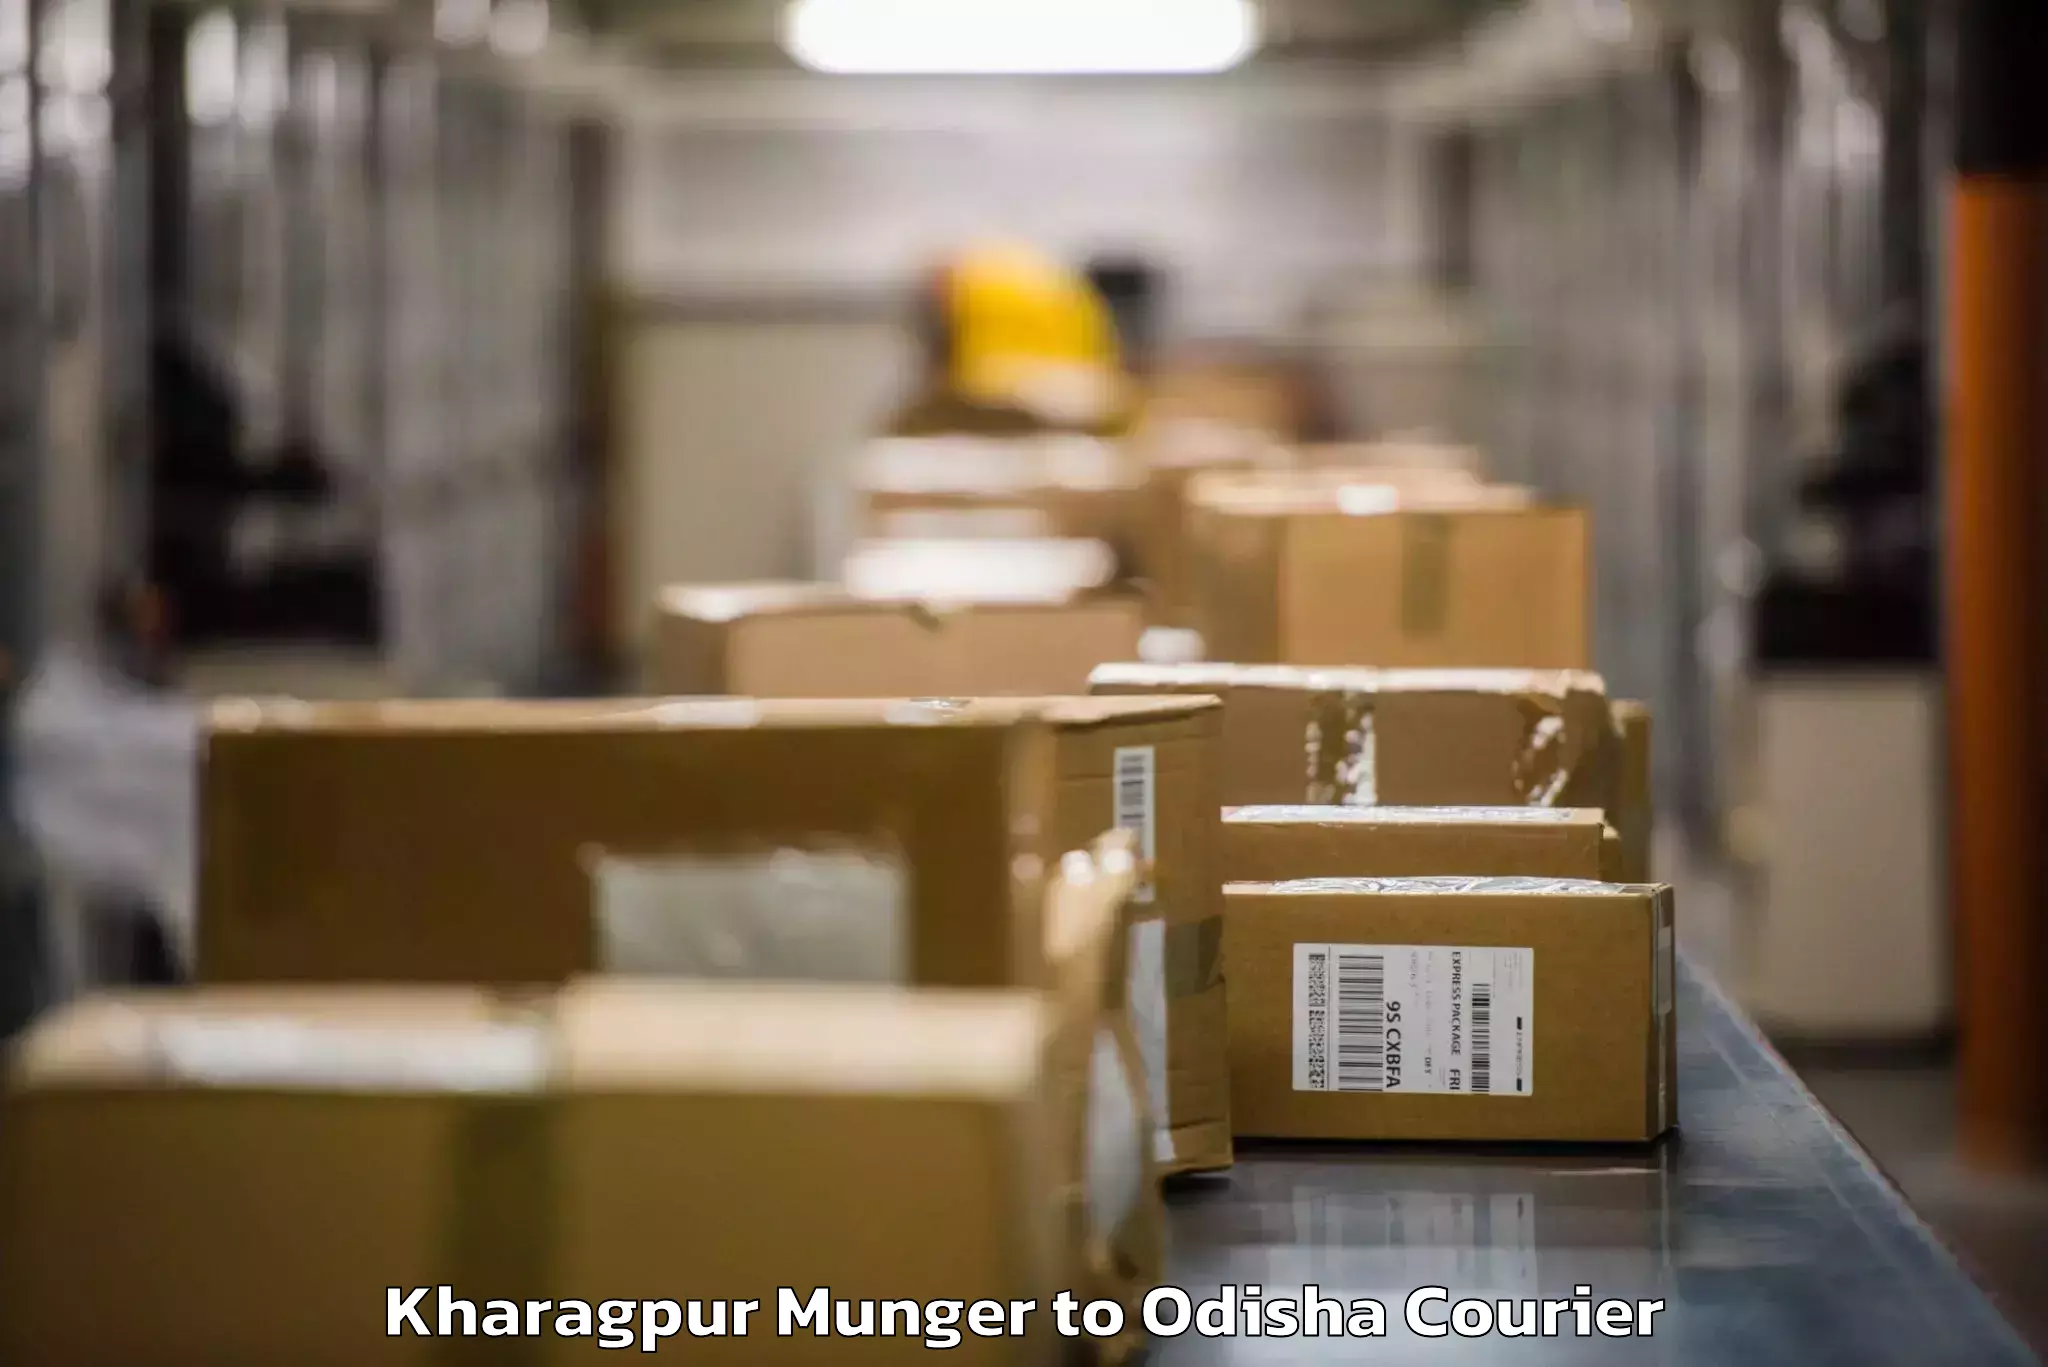 Baggage transport estimate Kharagpur Munger to Mangalpur